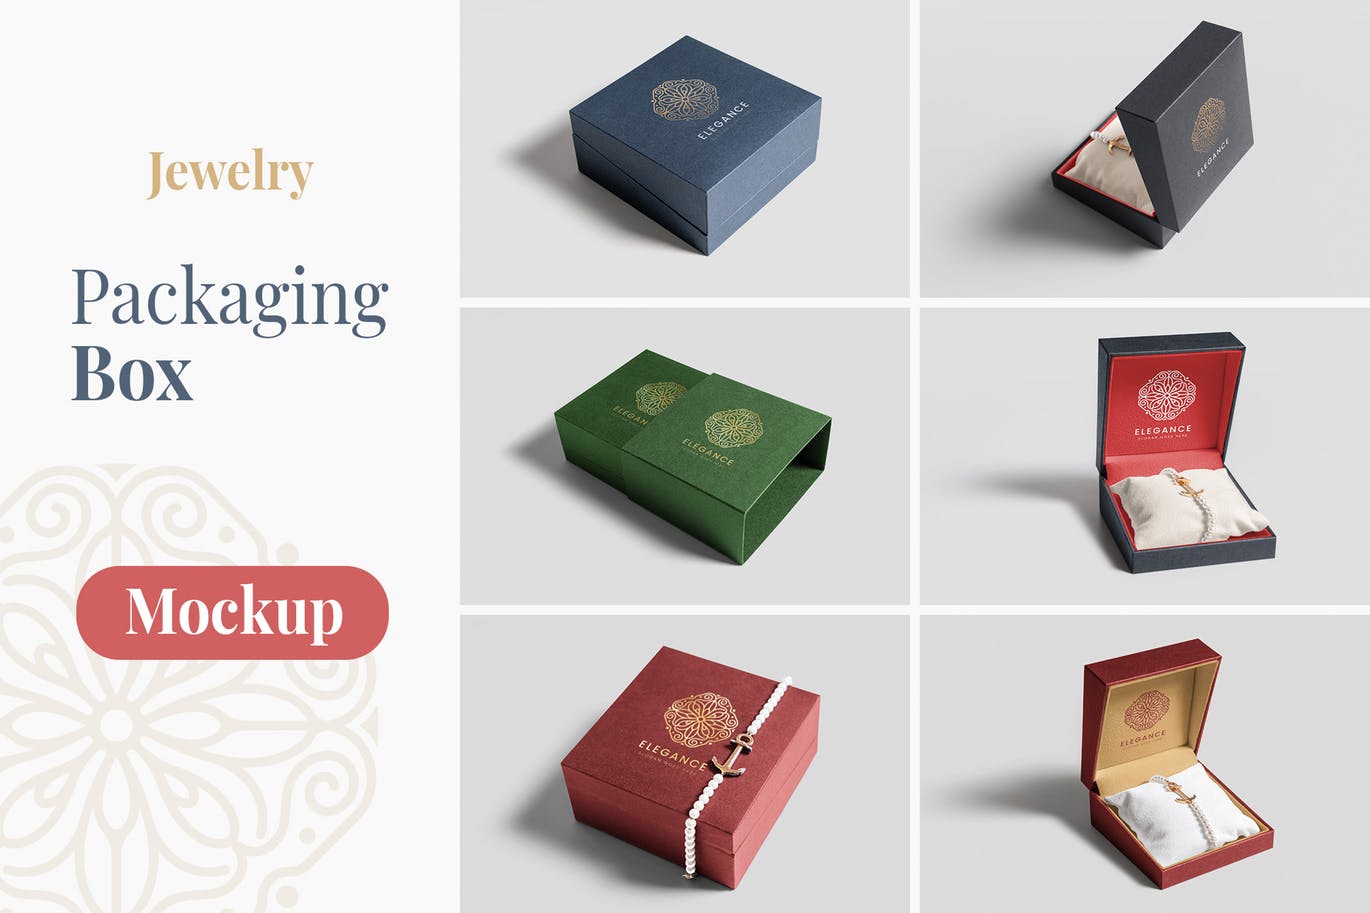 珠宝包装盒设计图素材库精选模板 Jewelry Packaging Box Mockups插图